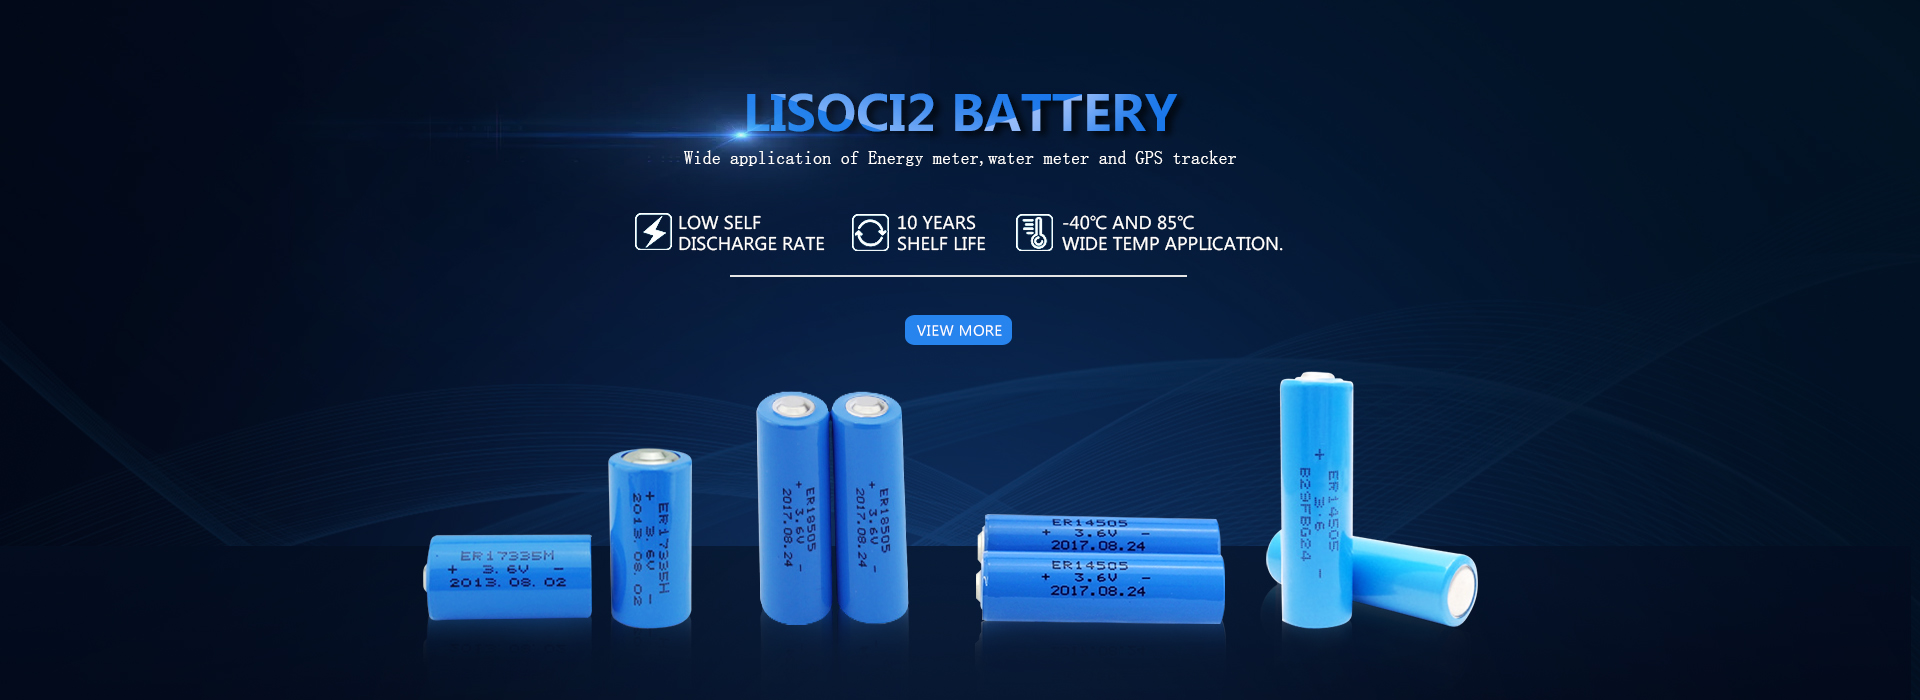 Производители на LiSoci2